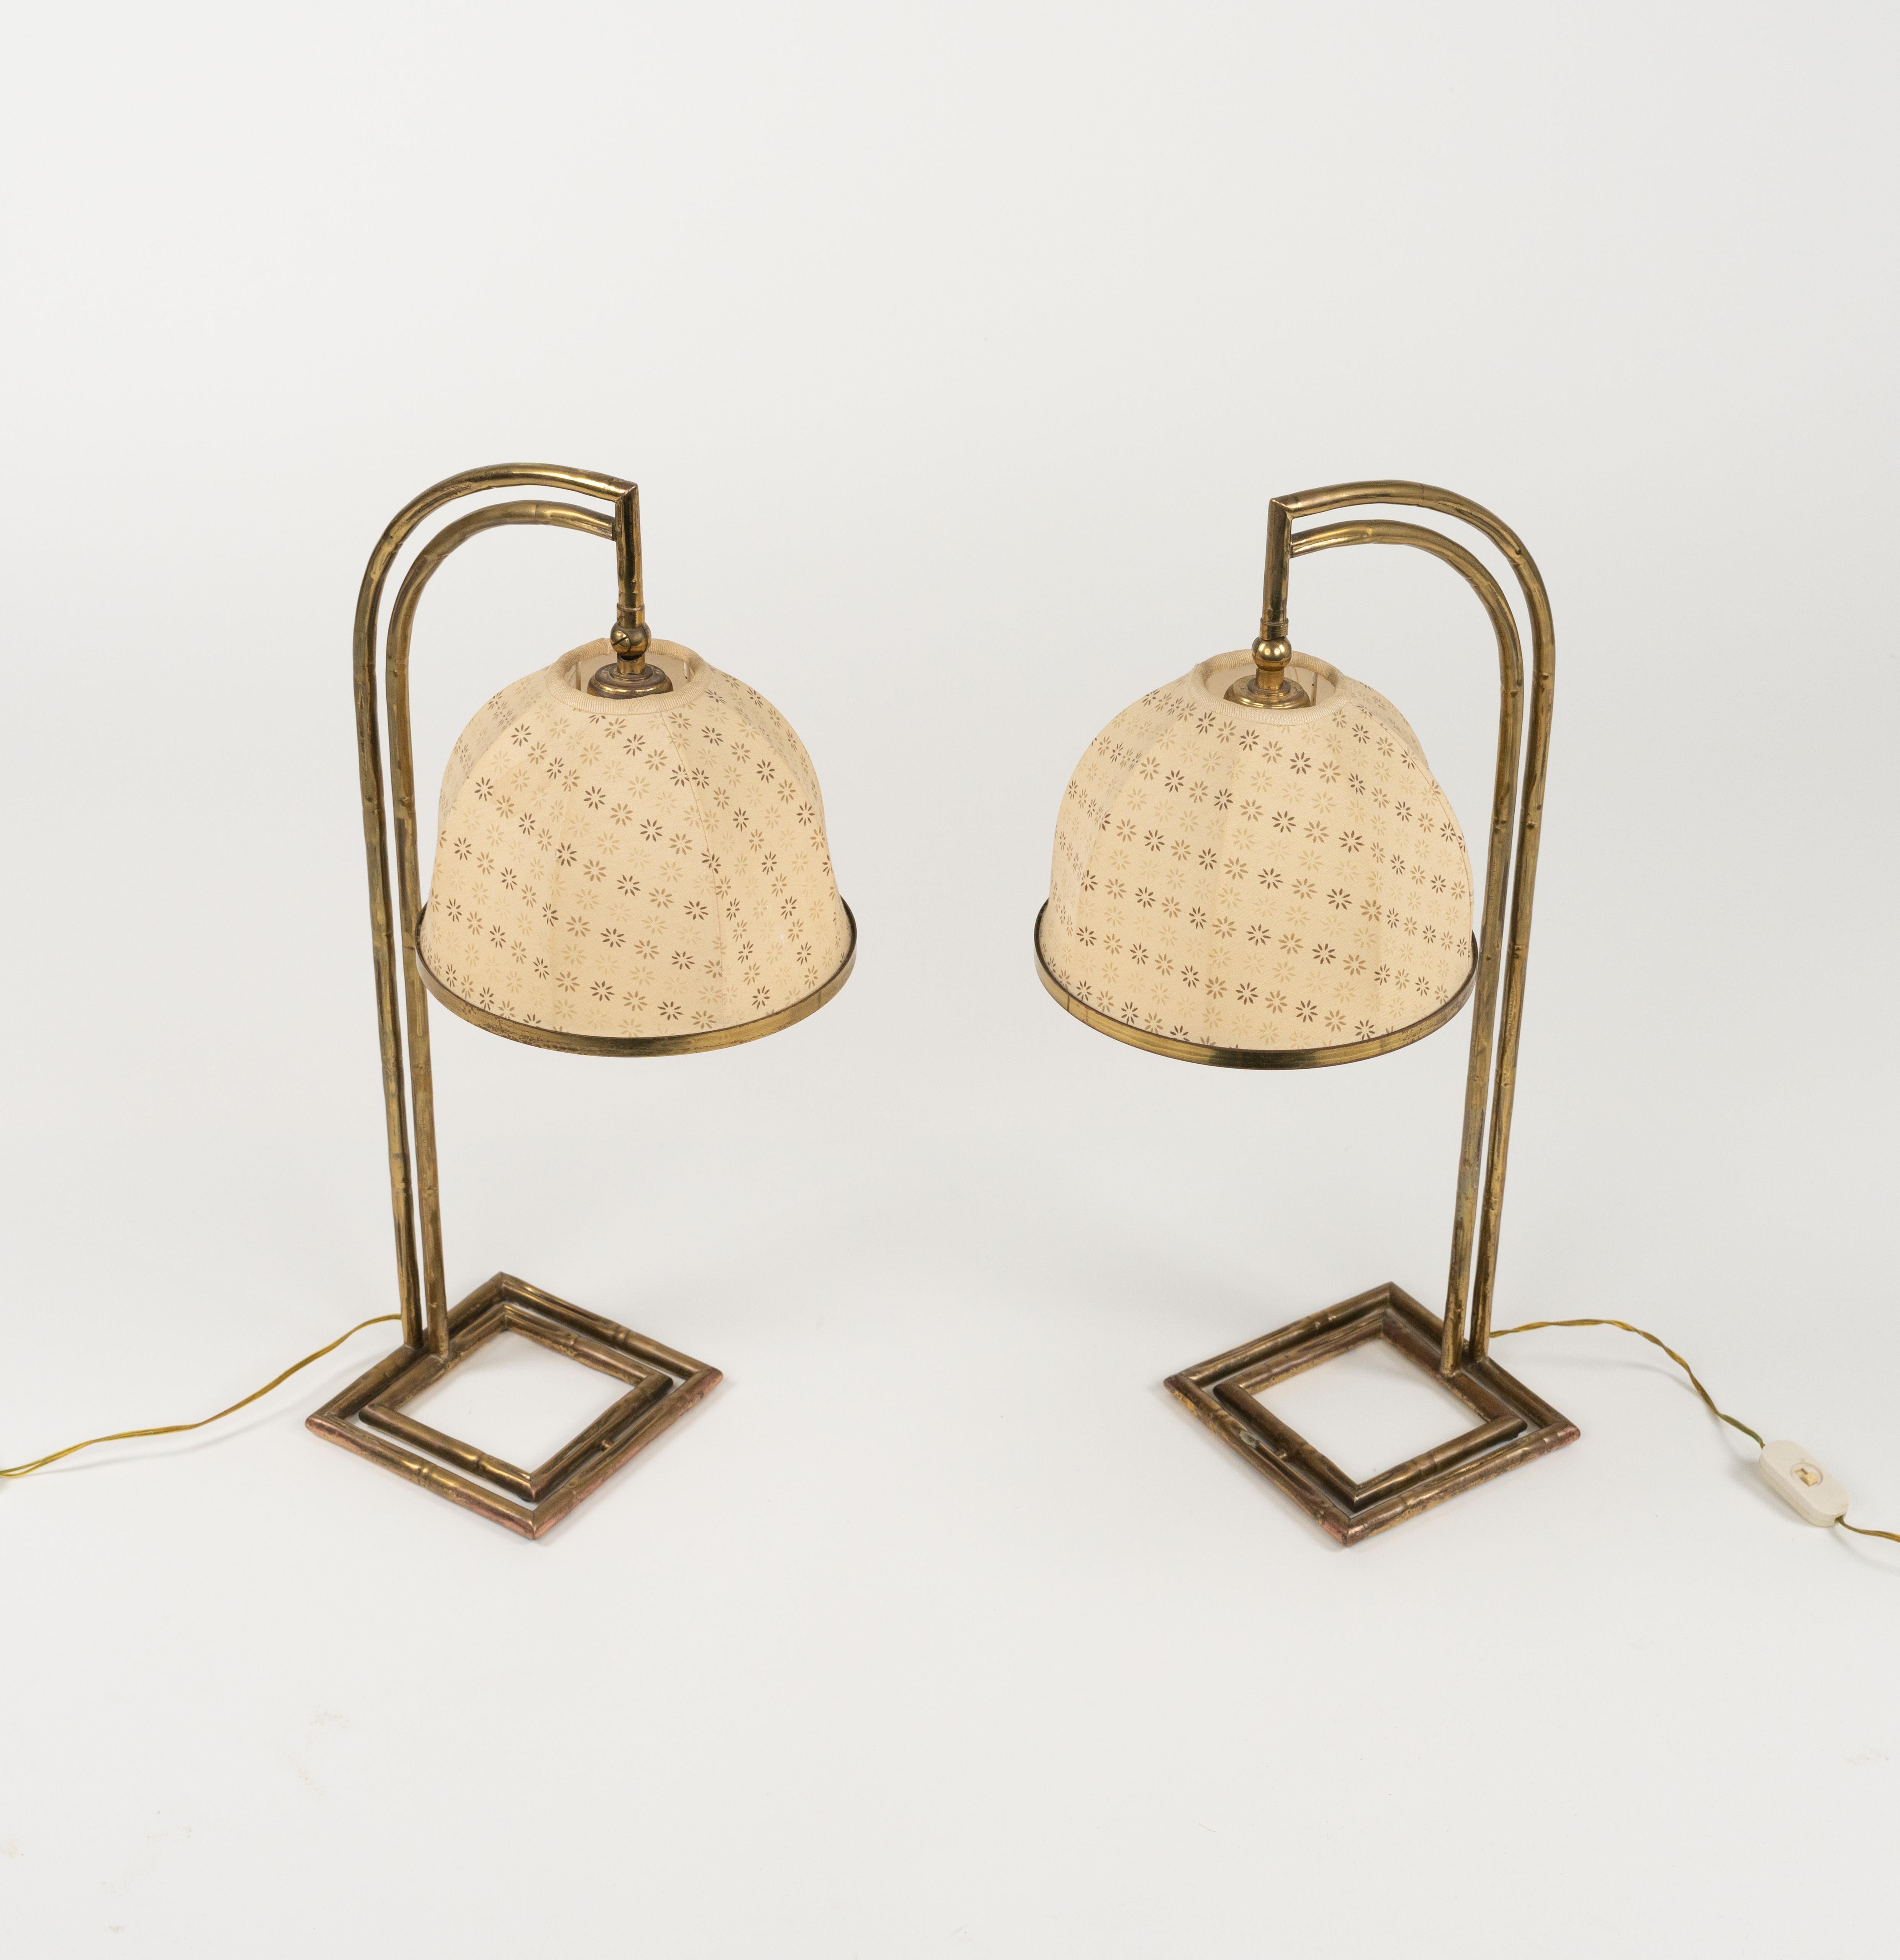 Midcentury erstaunliche Paar verstellbare Tischlampe in Messing faux Bambus und Stoff Lampenschirm im Stil der Maison Baguès.

Hergestellt in Italien in den 1960er Jahren.

Ein schönes Lampenpaar, das perfekt funktioniert. Europäischer Stecker